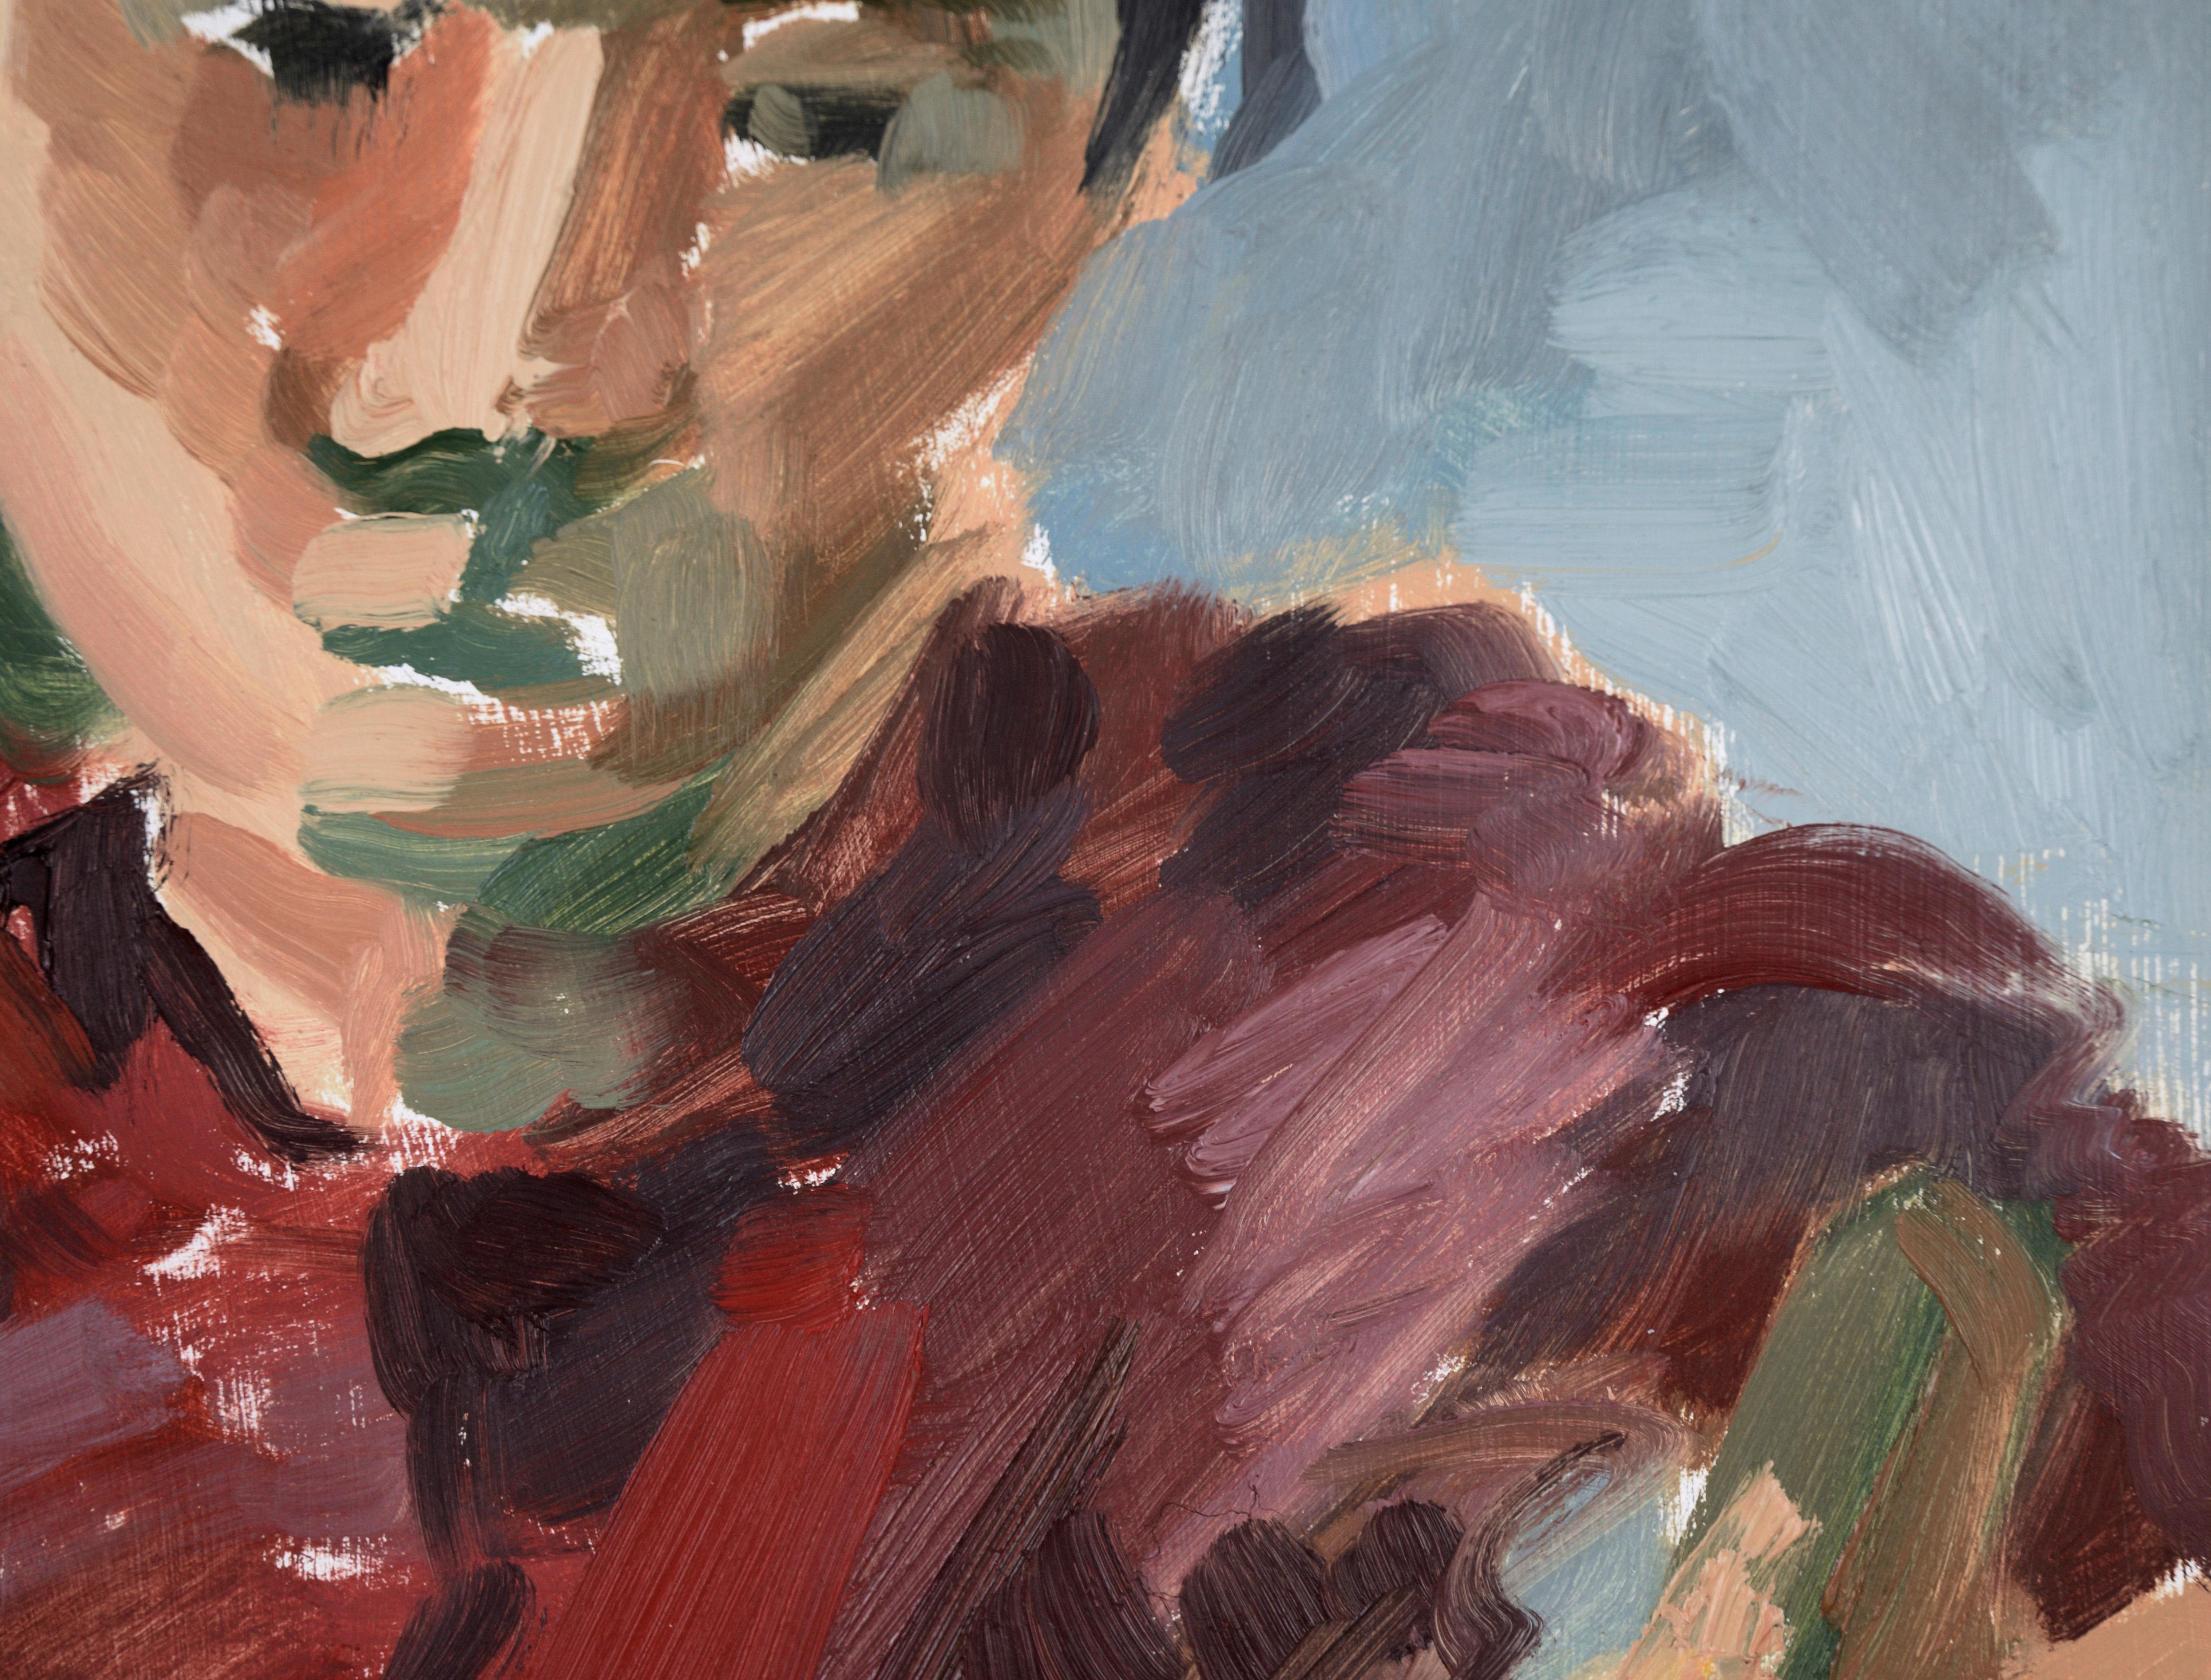 Portrait d'une femme en rouge - École figurative de la baie de San Francisco - Expressionniste abstrait

Portrait abstrait d'une femme en rouge par l'artiste de San Francisco Heather Speck (américaine, née en 1978). Une femme est assise de côté sur